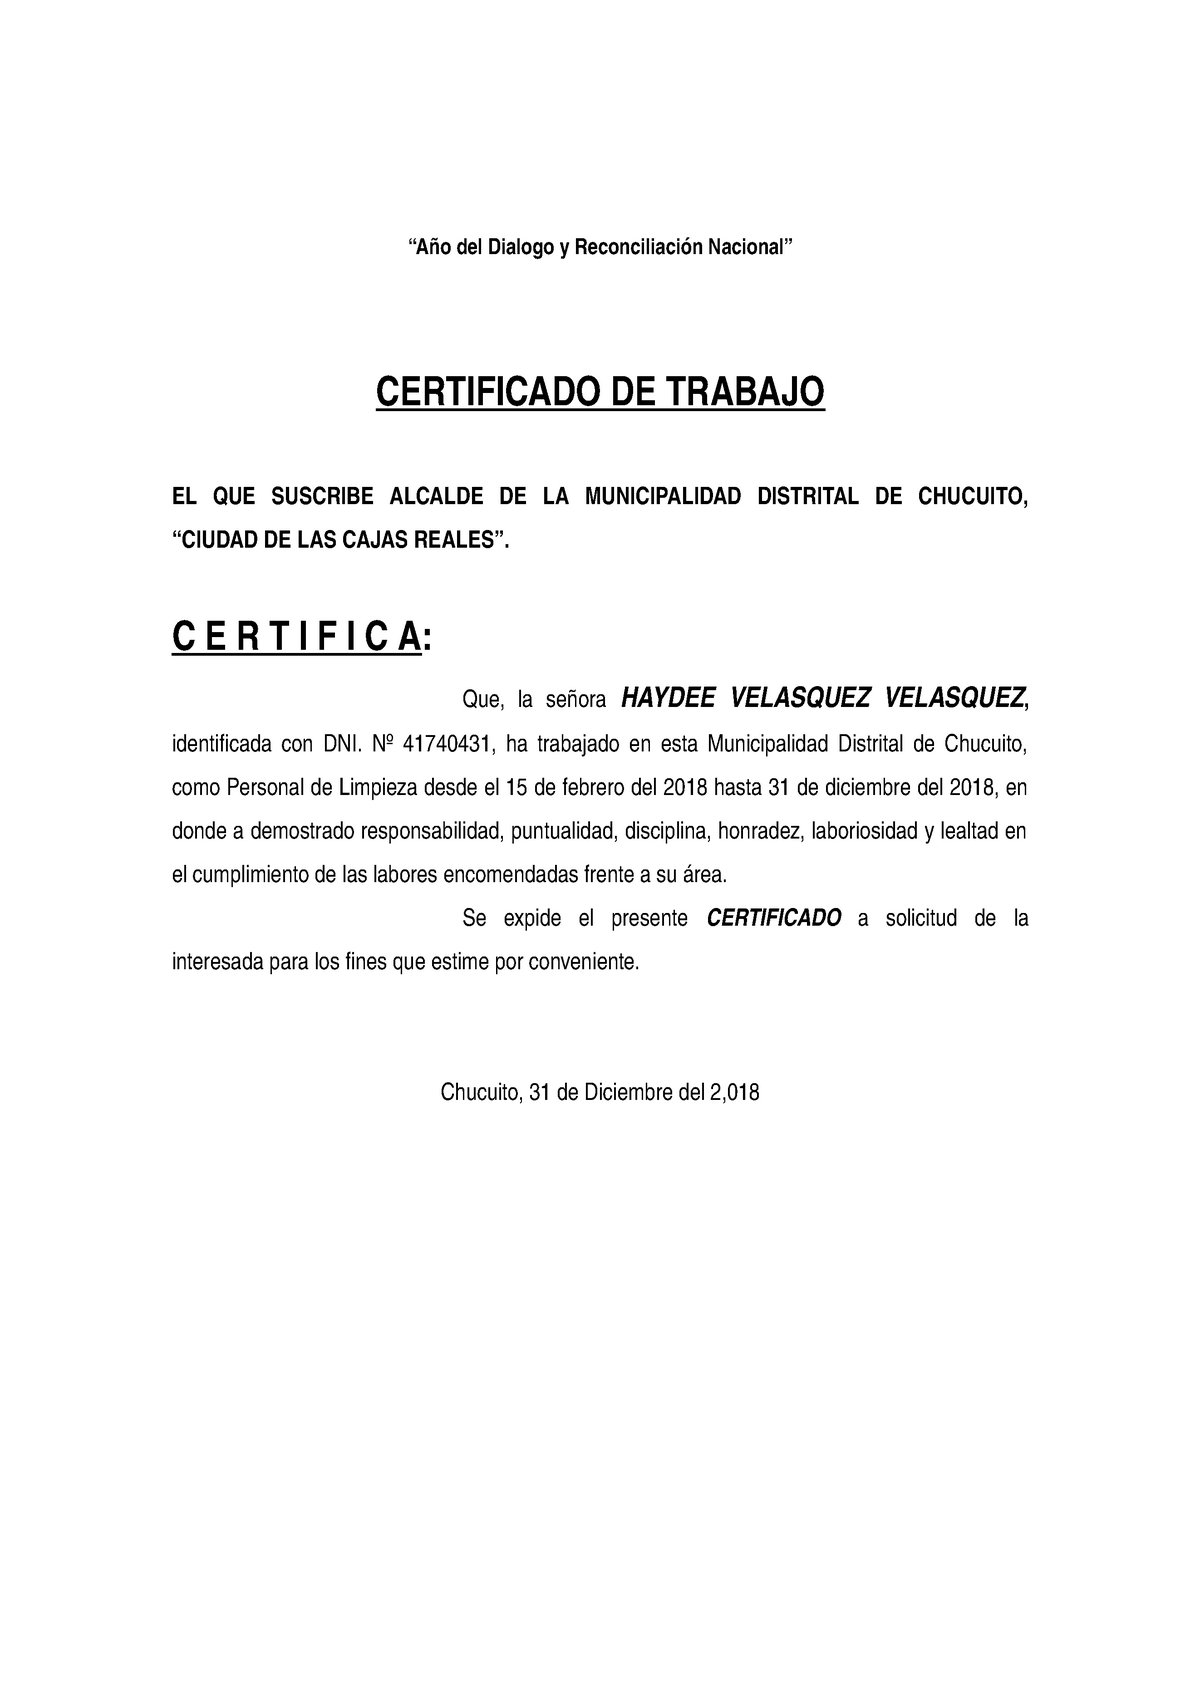 Certificado de trabajo - “Año del Dialogo y Reconciliación Nacional ...